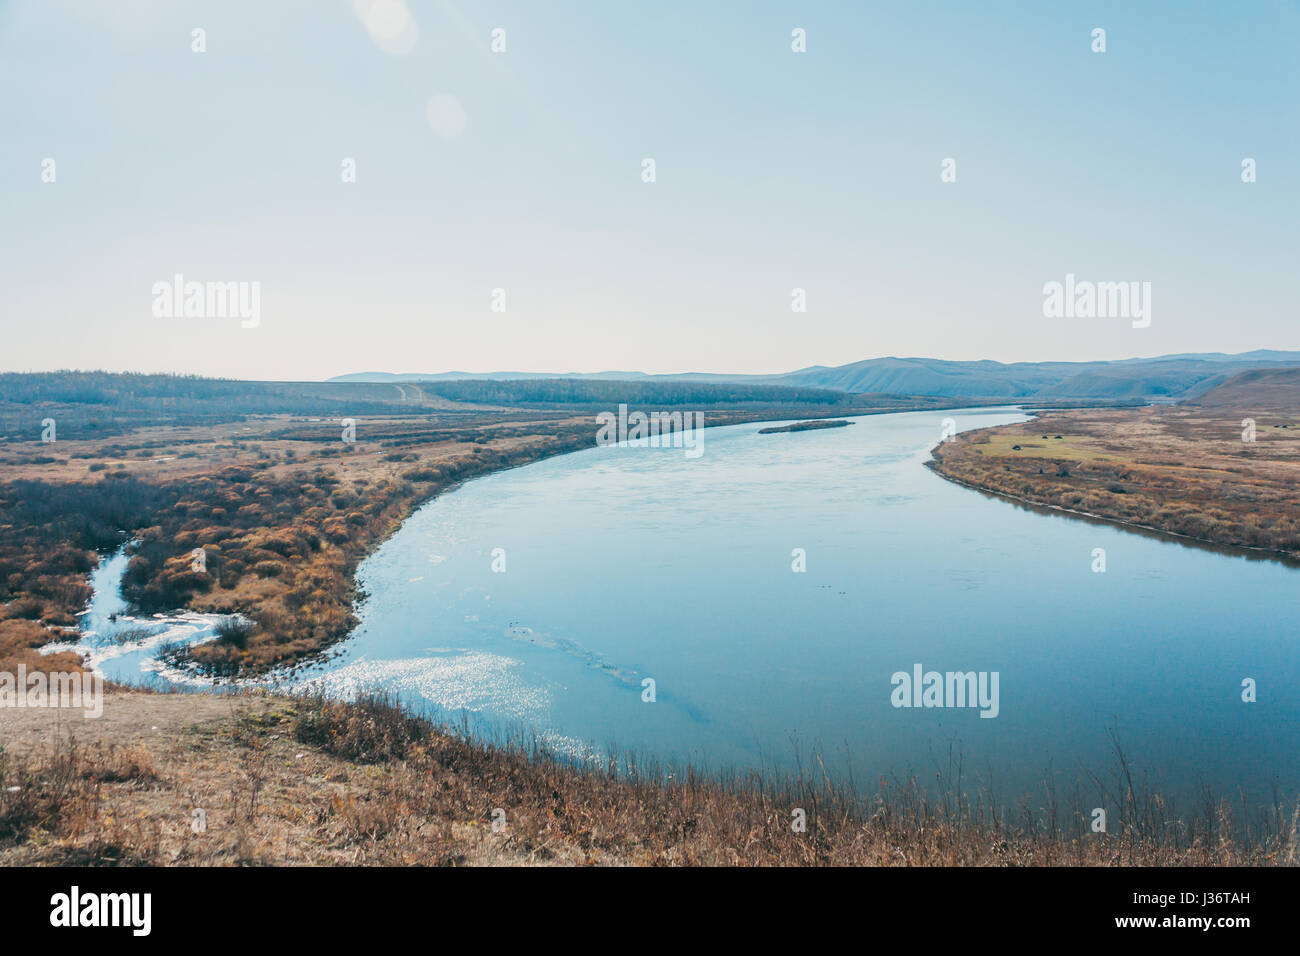 Un paysage de montagne avec une rivière, lac en forêt en Mongolie Intérieure Linyi Banque D'Images